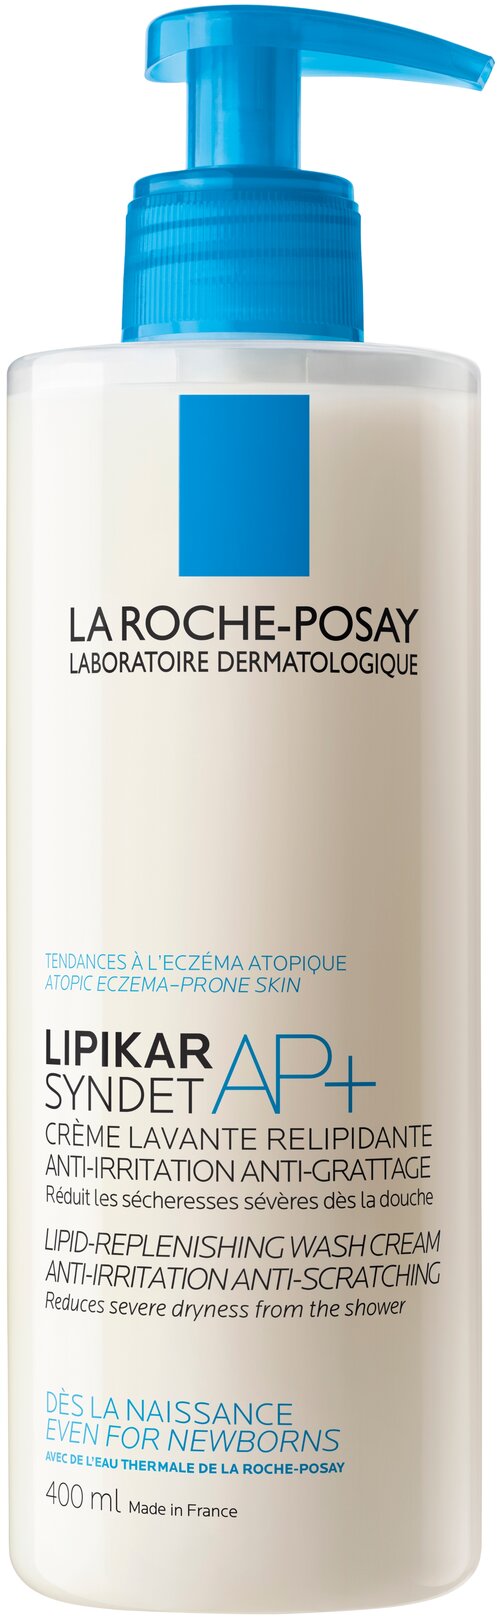 La Roche-Posay Крем-гель для душа La Roche-Posay Lipikar Syndet AP+, 400 мл